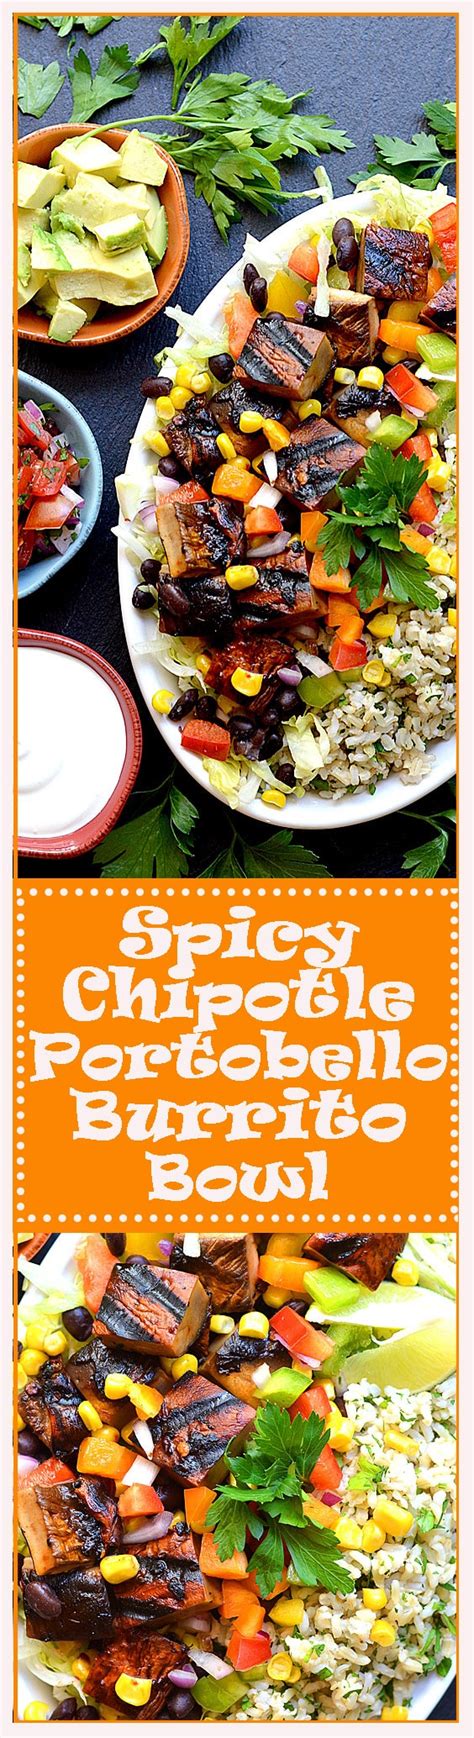 Spicy Chipotle Portobello Burrito Bowl With Whole30 Option Theveglife